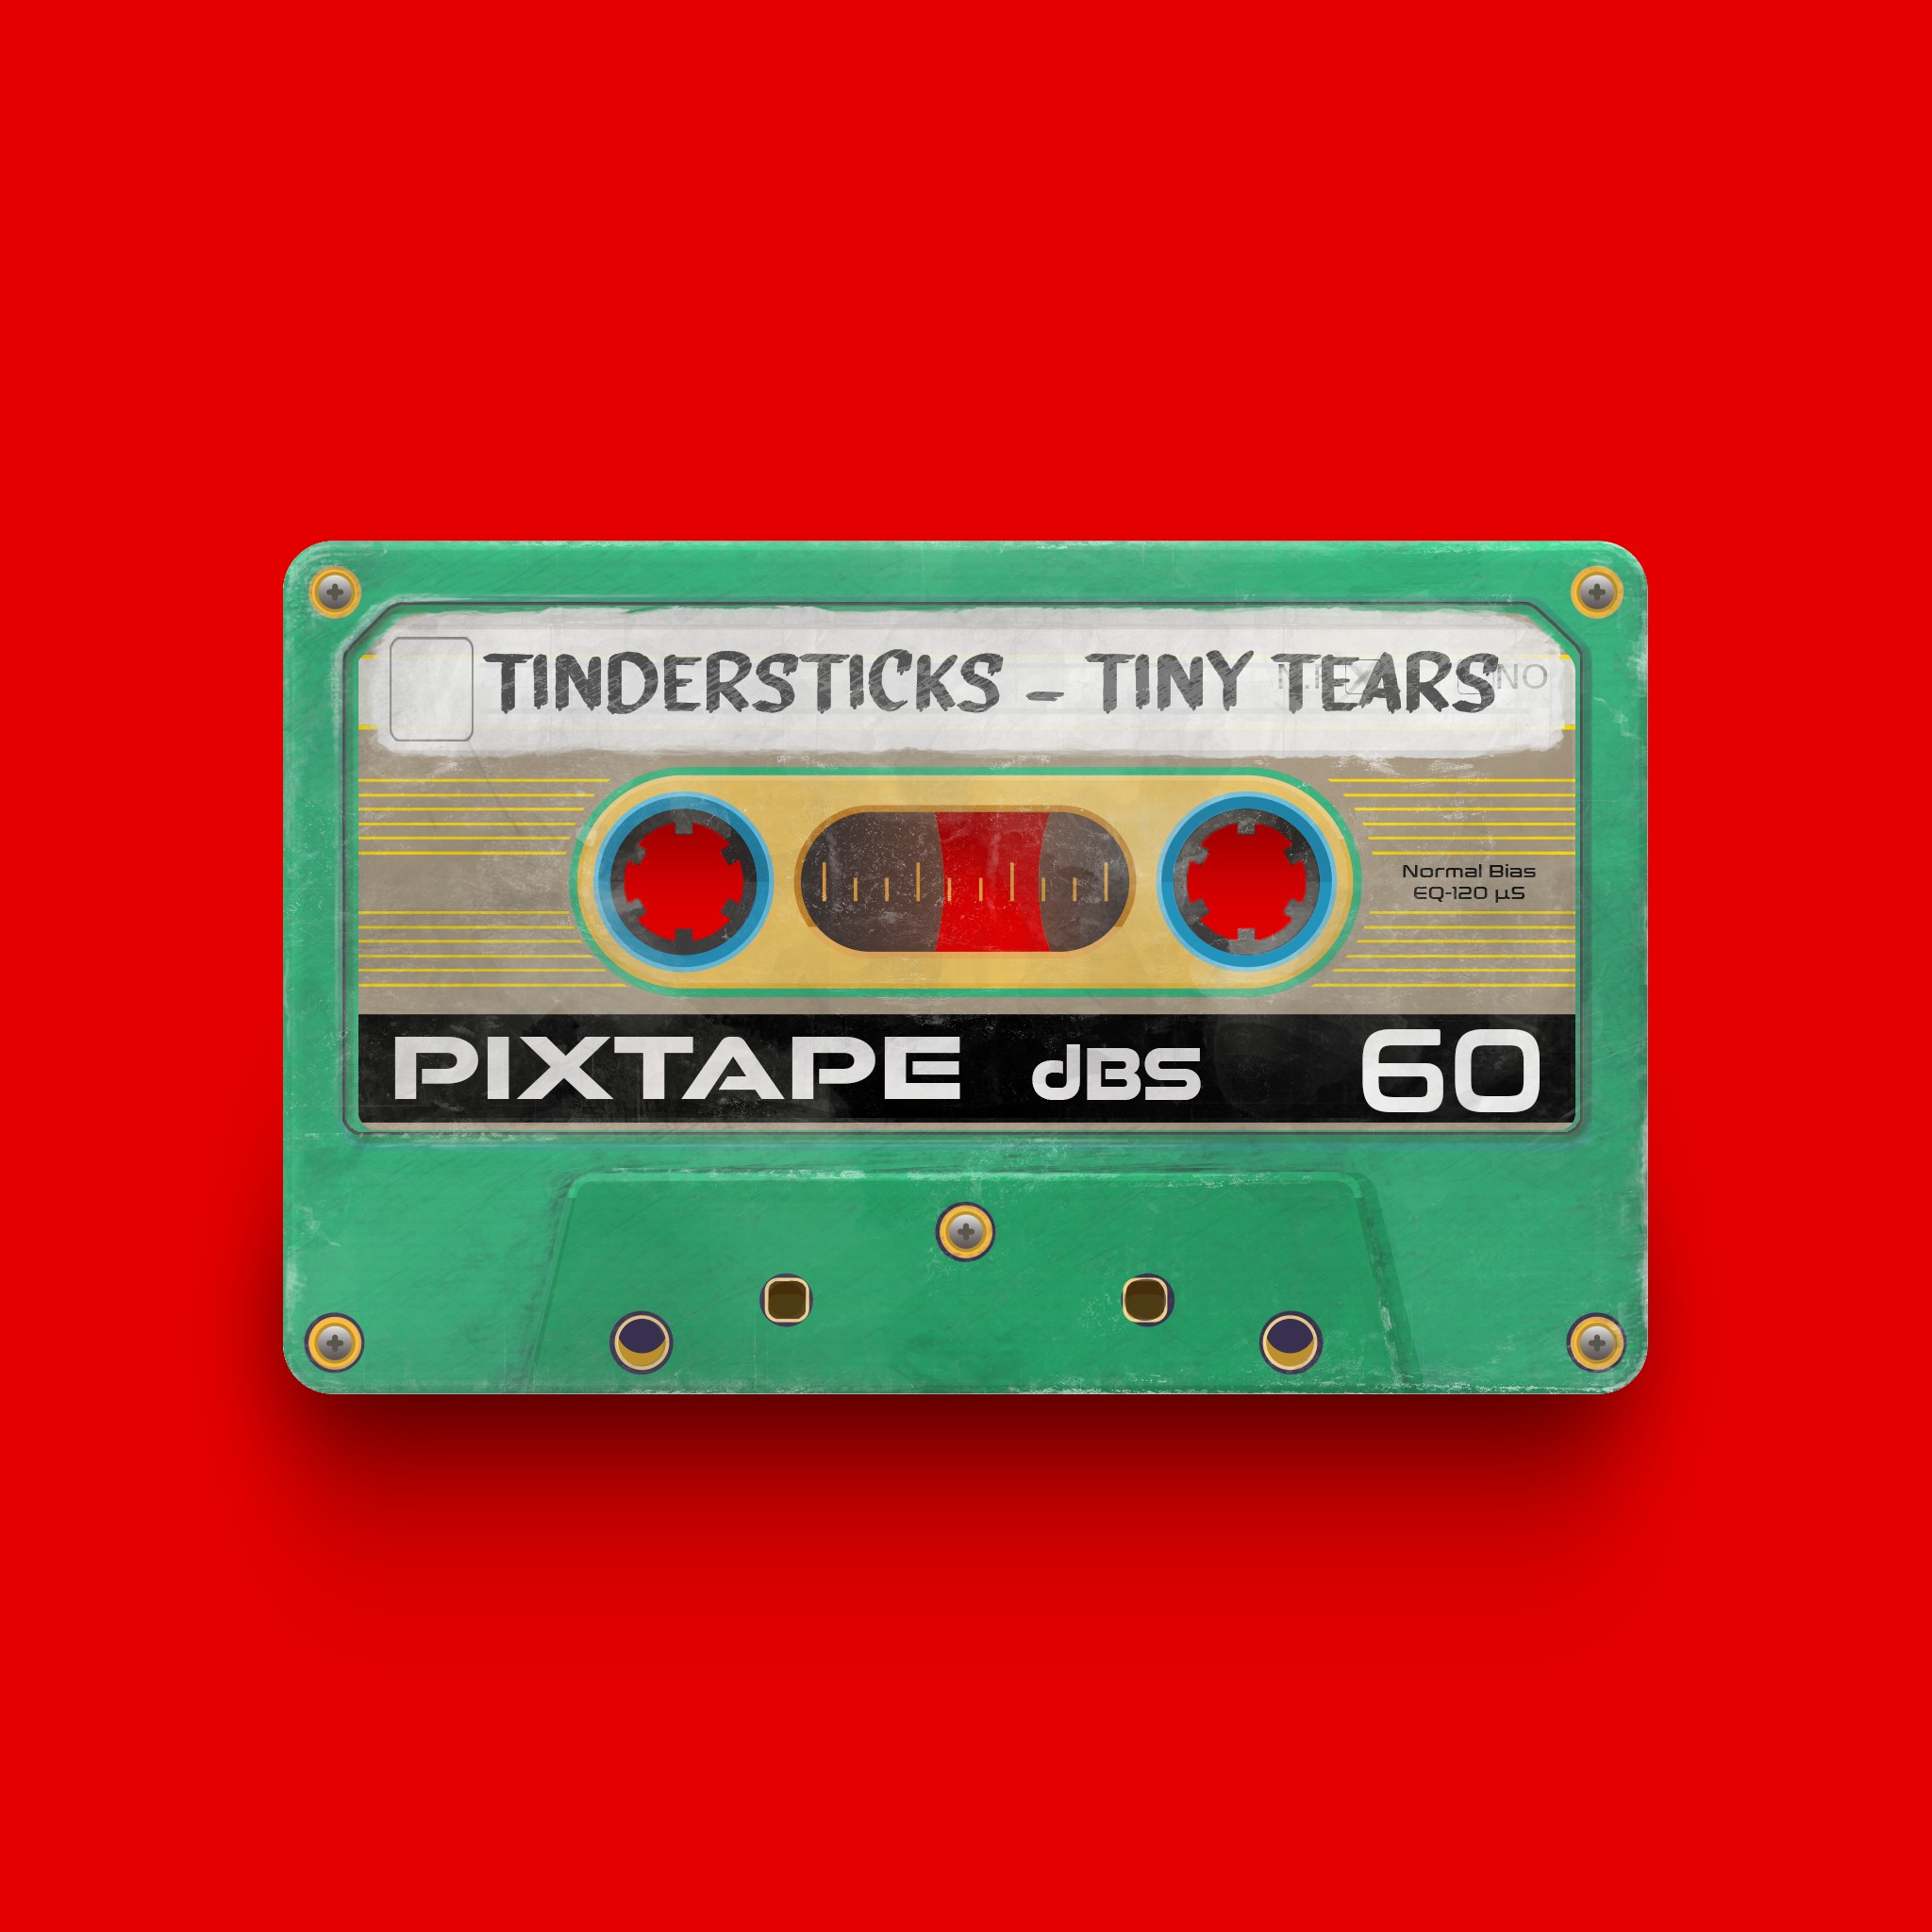 PixTape #9998 | Tindersticks - Tiny Tears